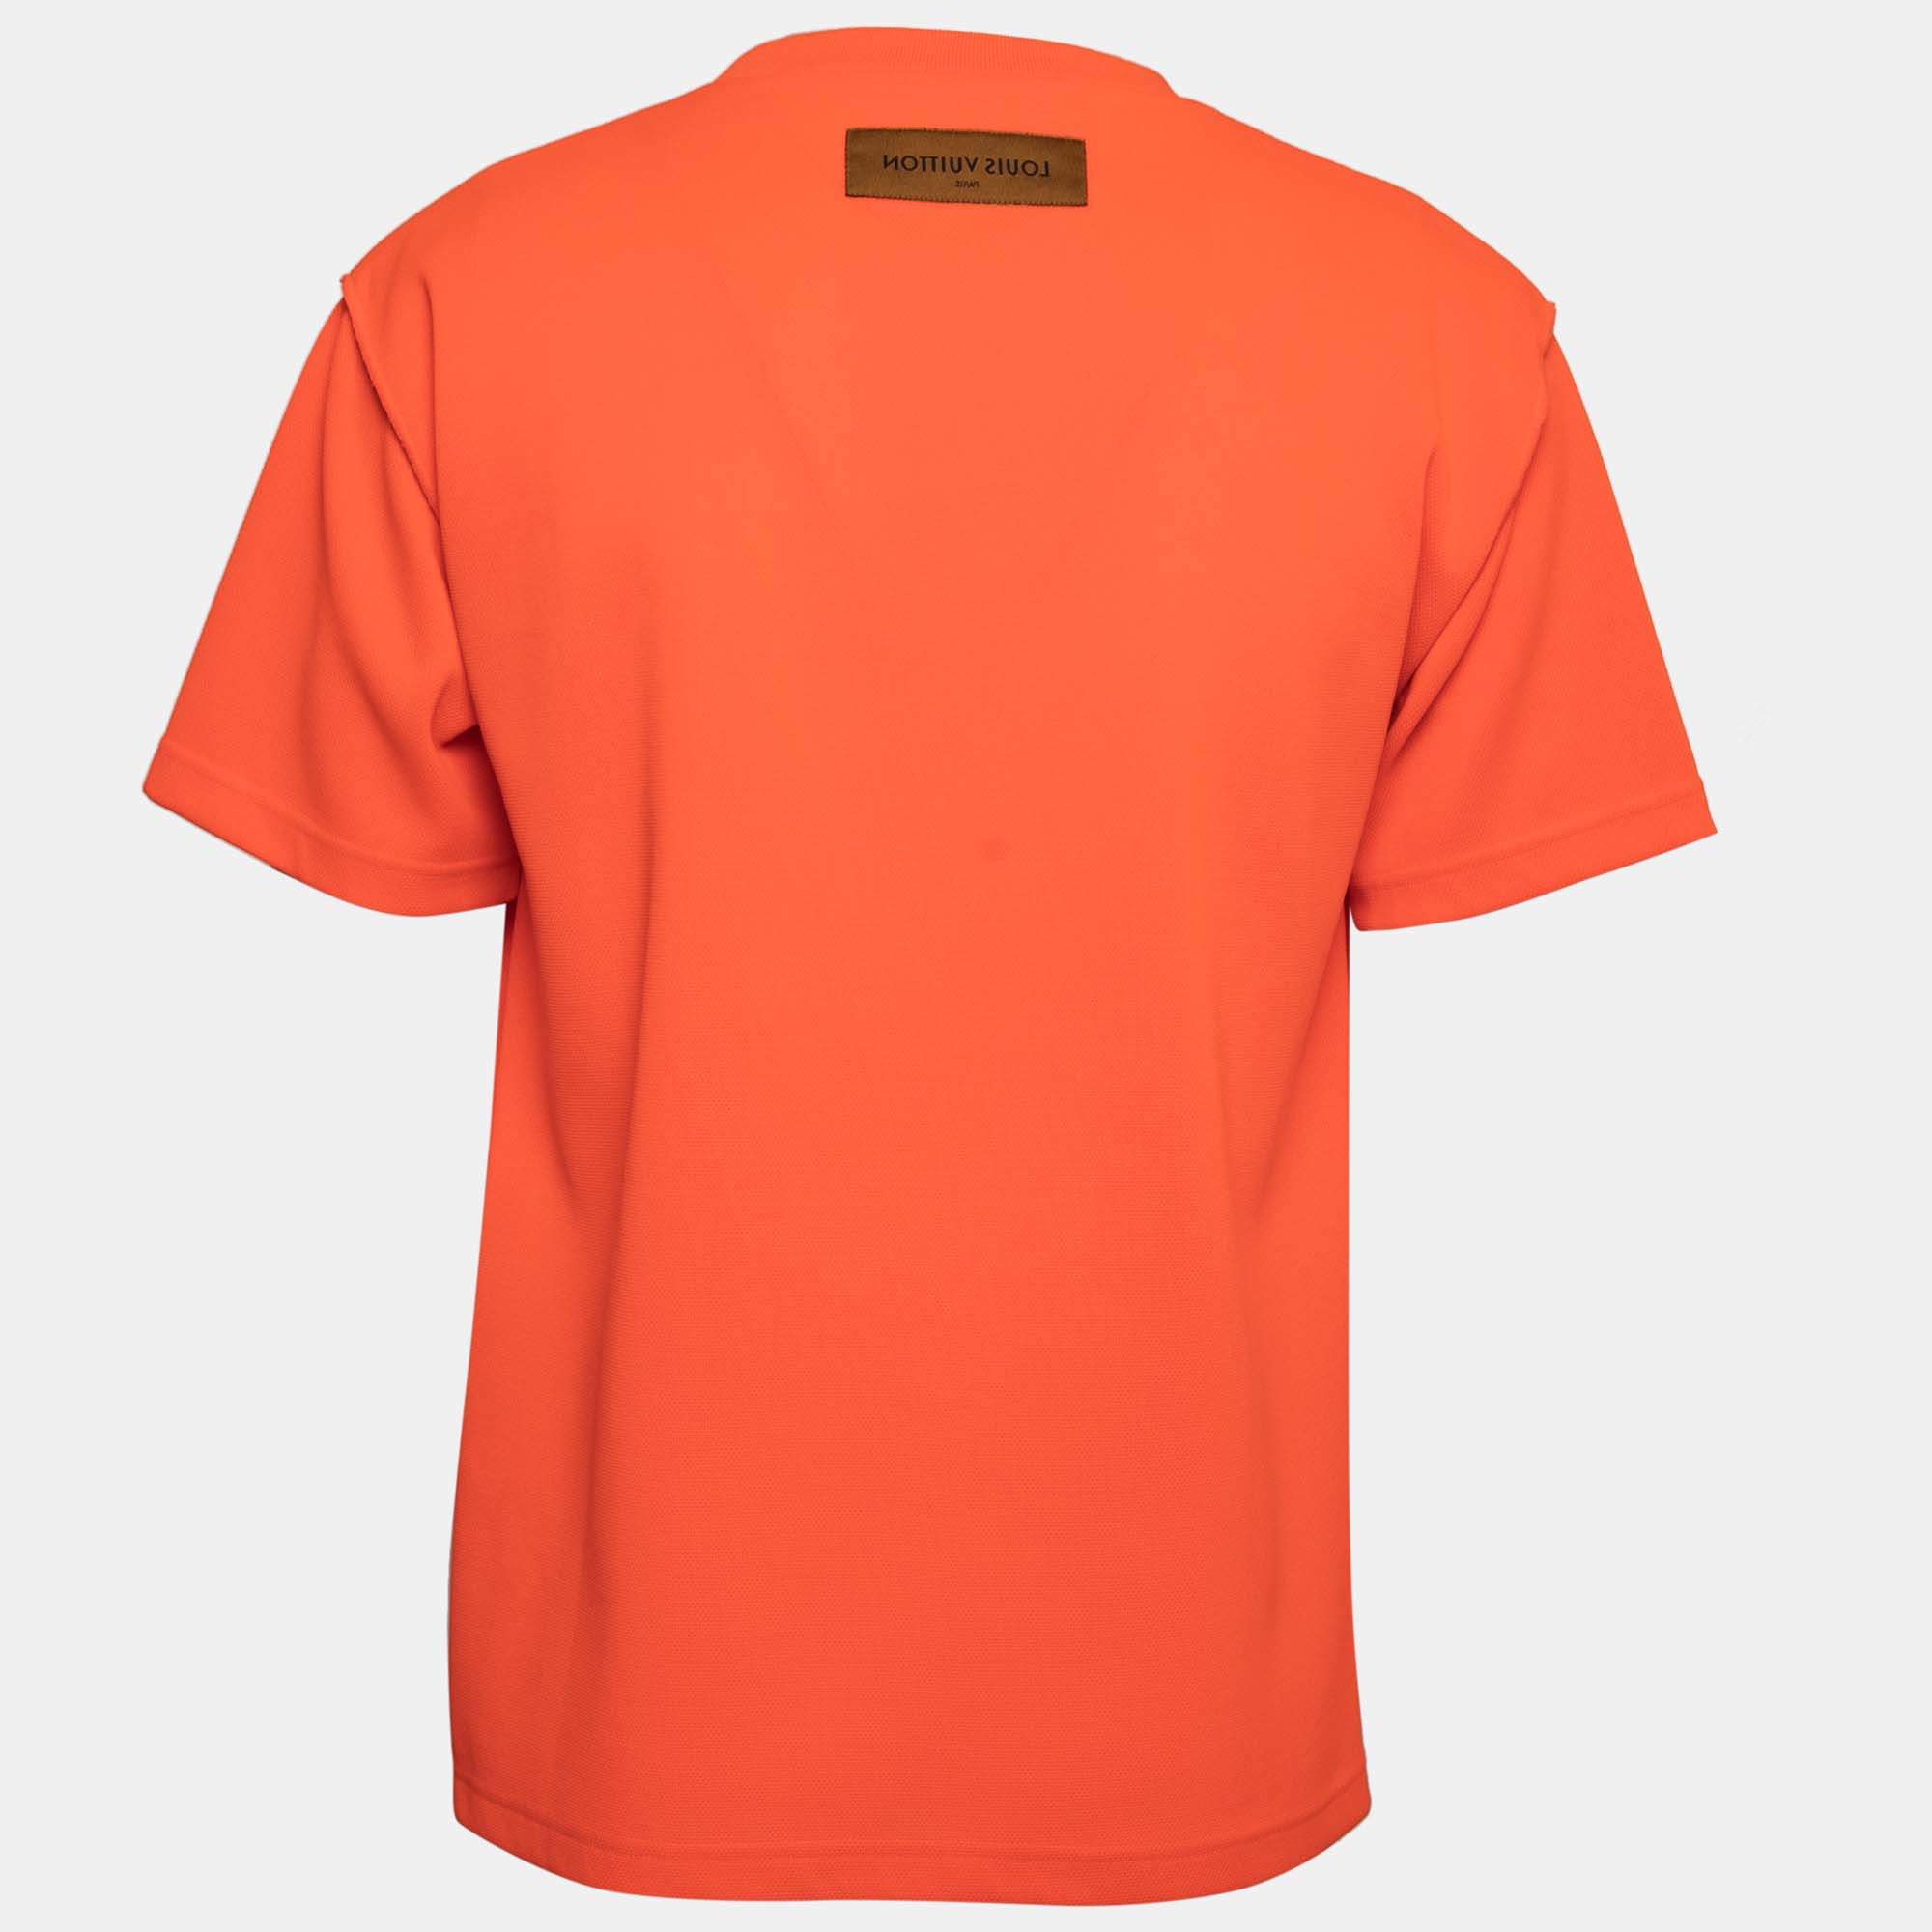 Louis Vuitton Short-sleeved Cotton T-Shirt Orange Flame. Size 3L